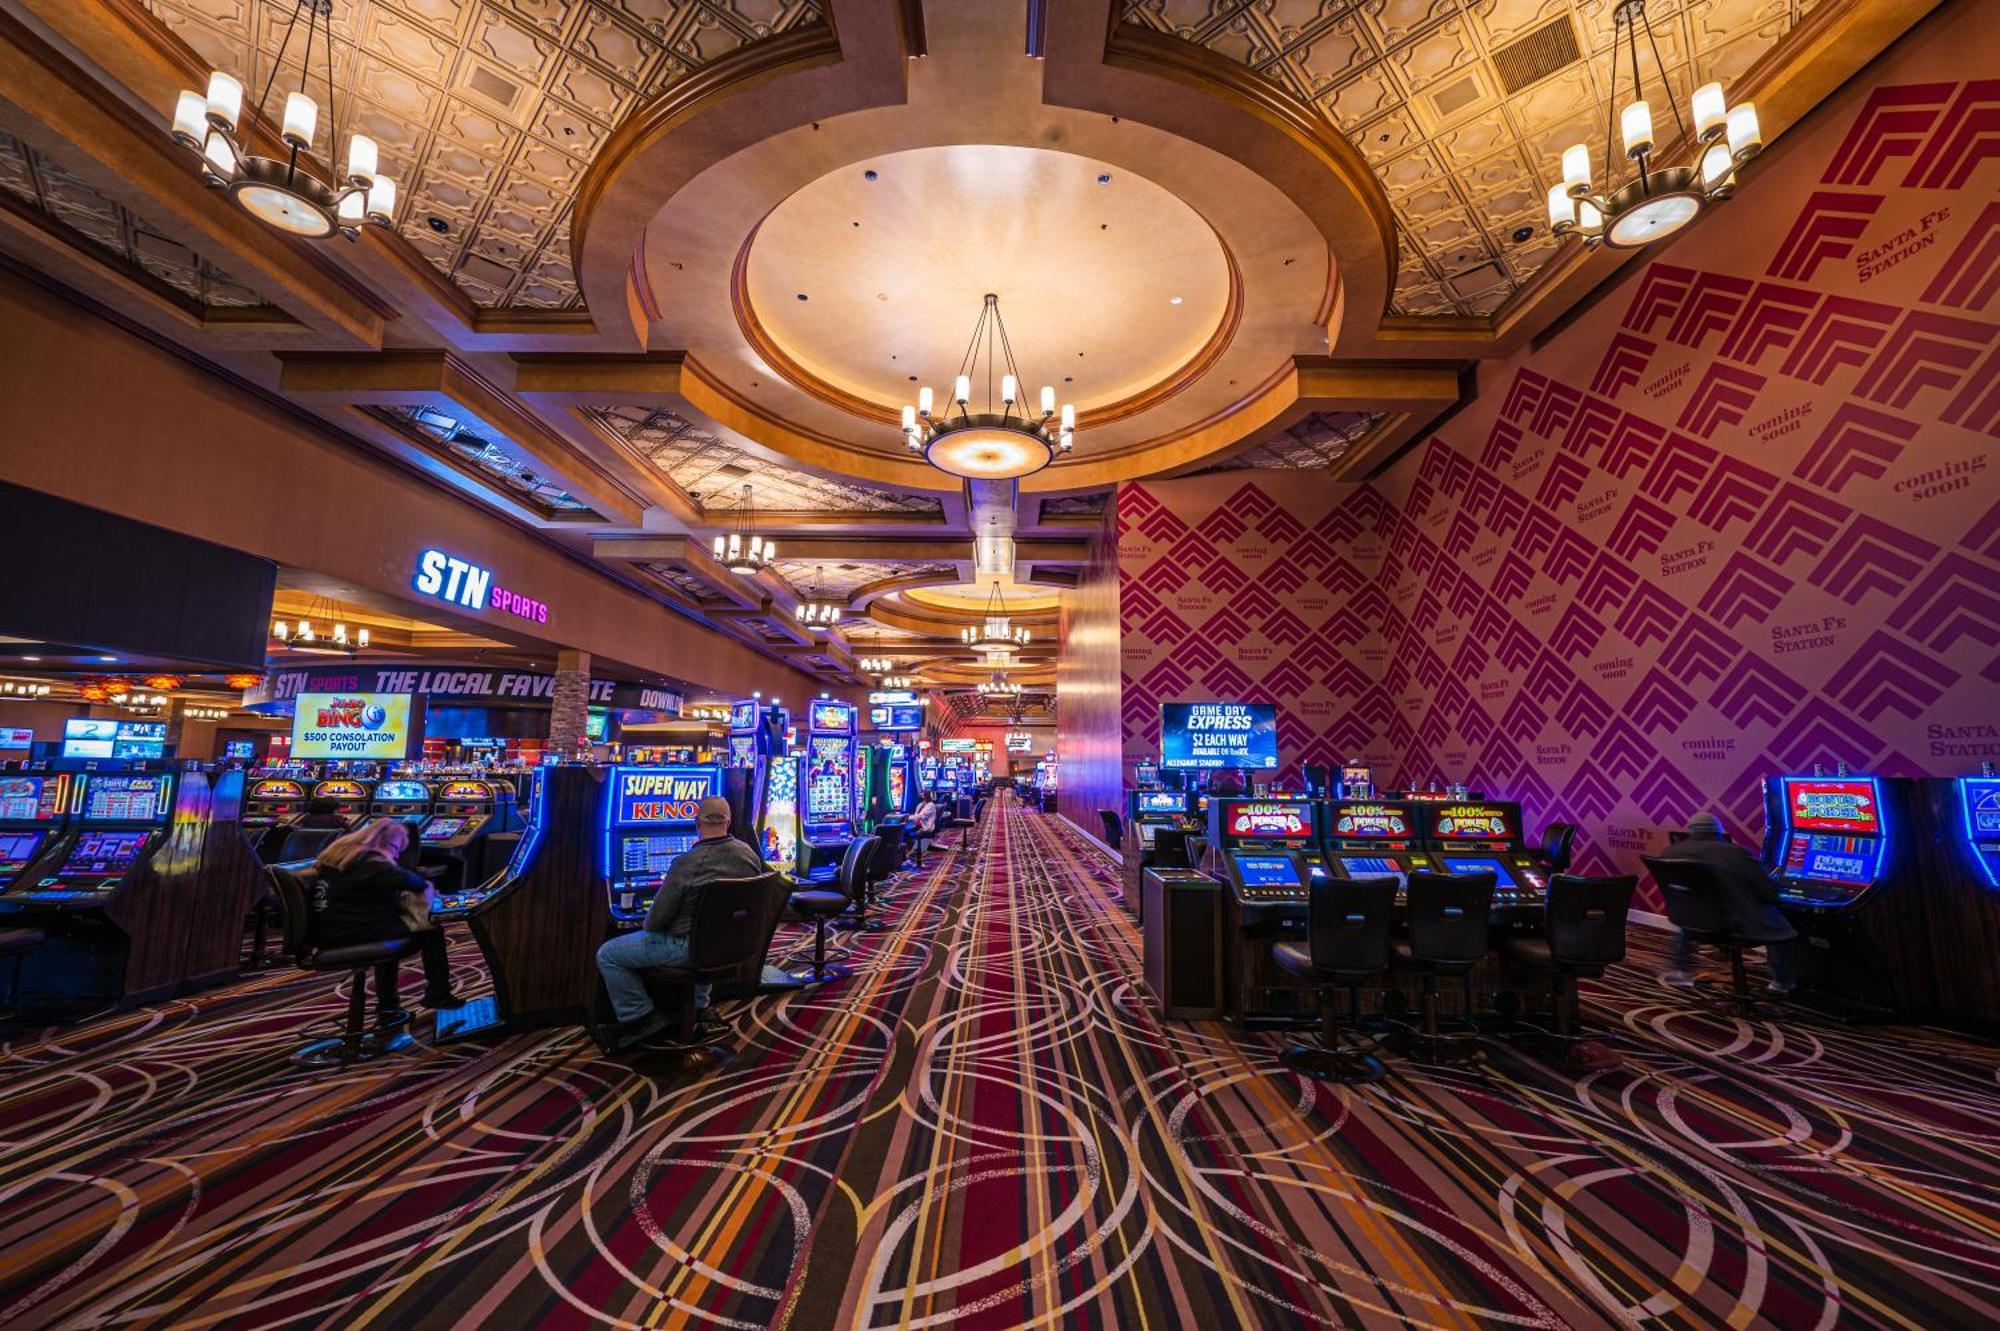 Santa Fe Station Hotel & Casino Las Vegas Kültér fotó